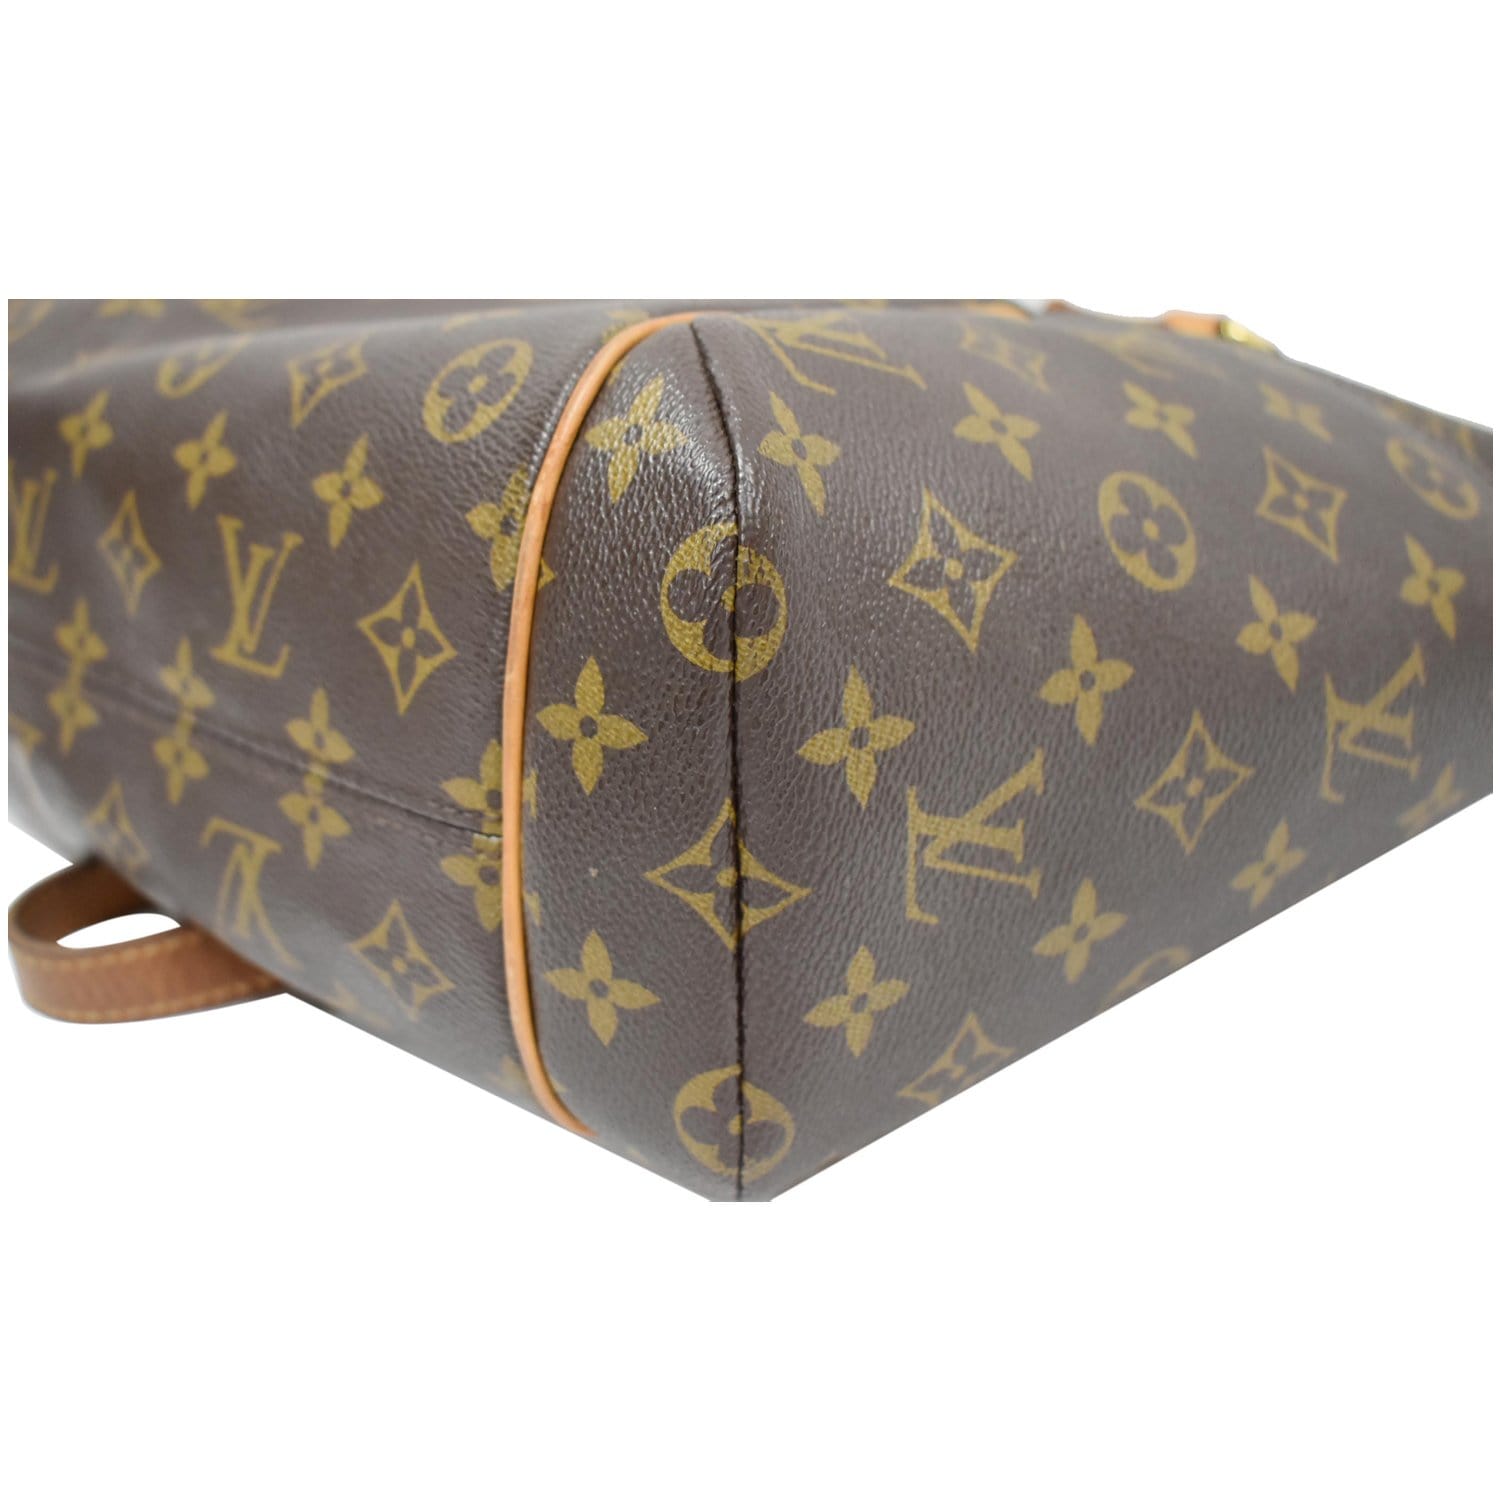 Louis Vuitton 2009 Pre-owned Monogram Étoile City Bag PM Shoulder Bag - Brown